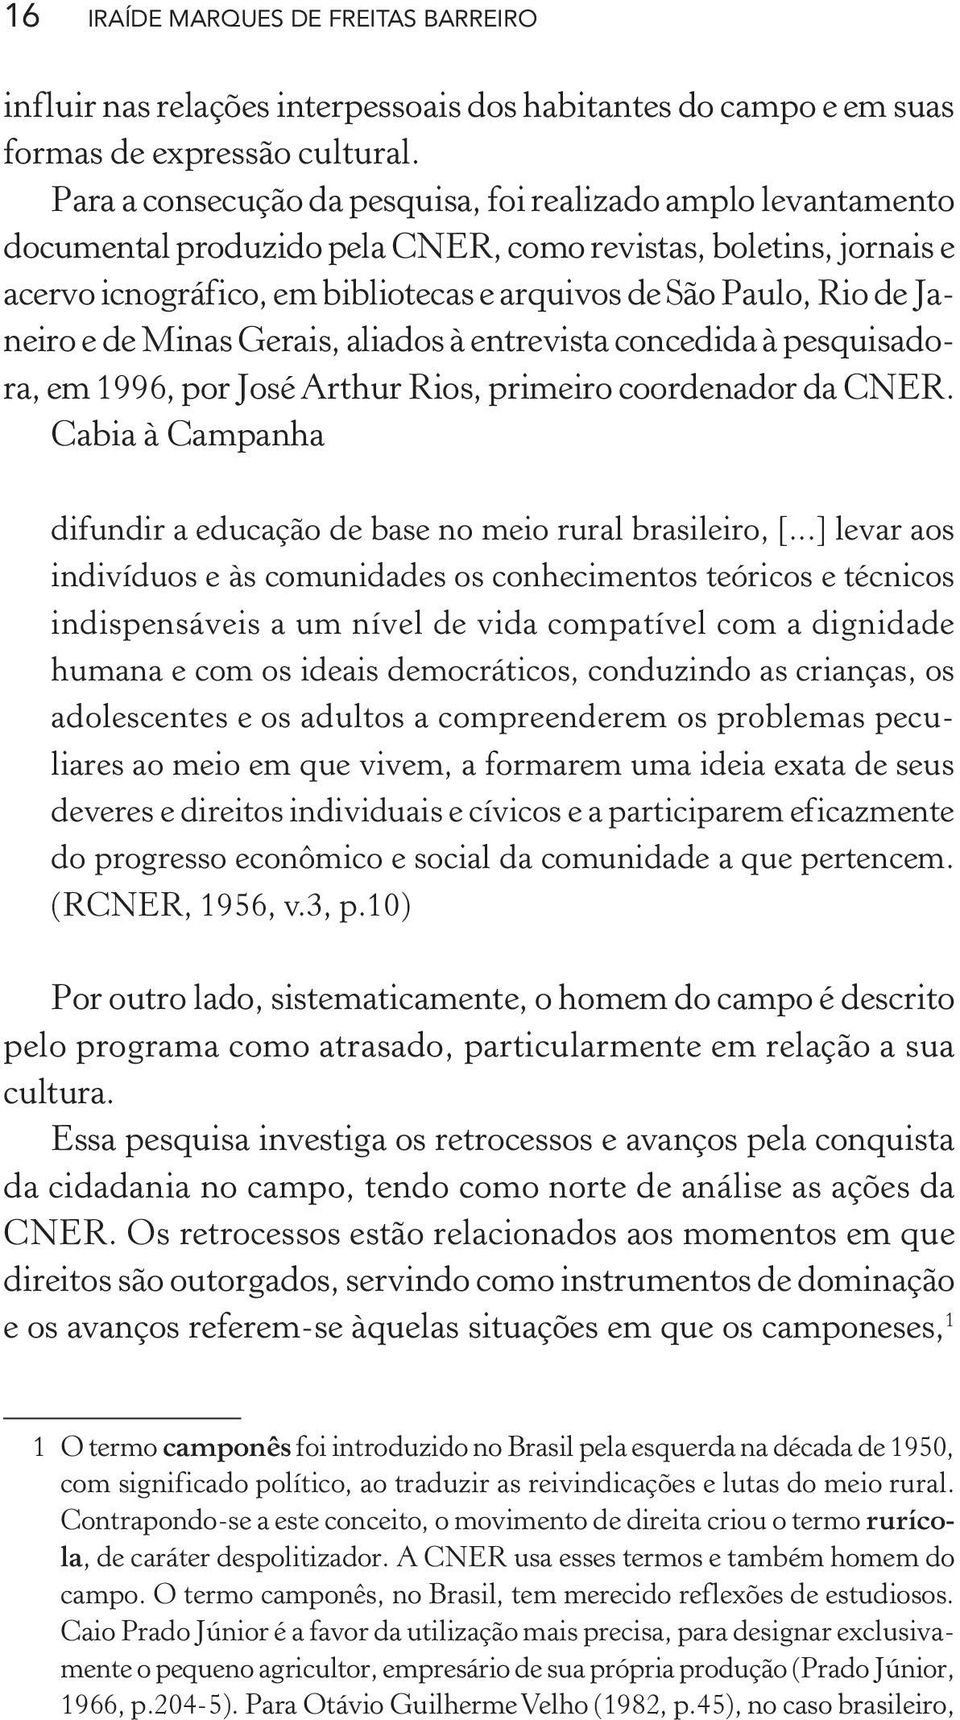 Janeiro e de Minas Gerais, aliados à entrevista concedida à pesquisadora, em 1996, por José Arthur Rios, primeiro coordenador da CNER.